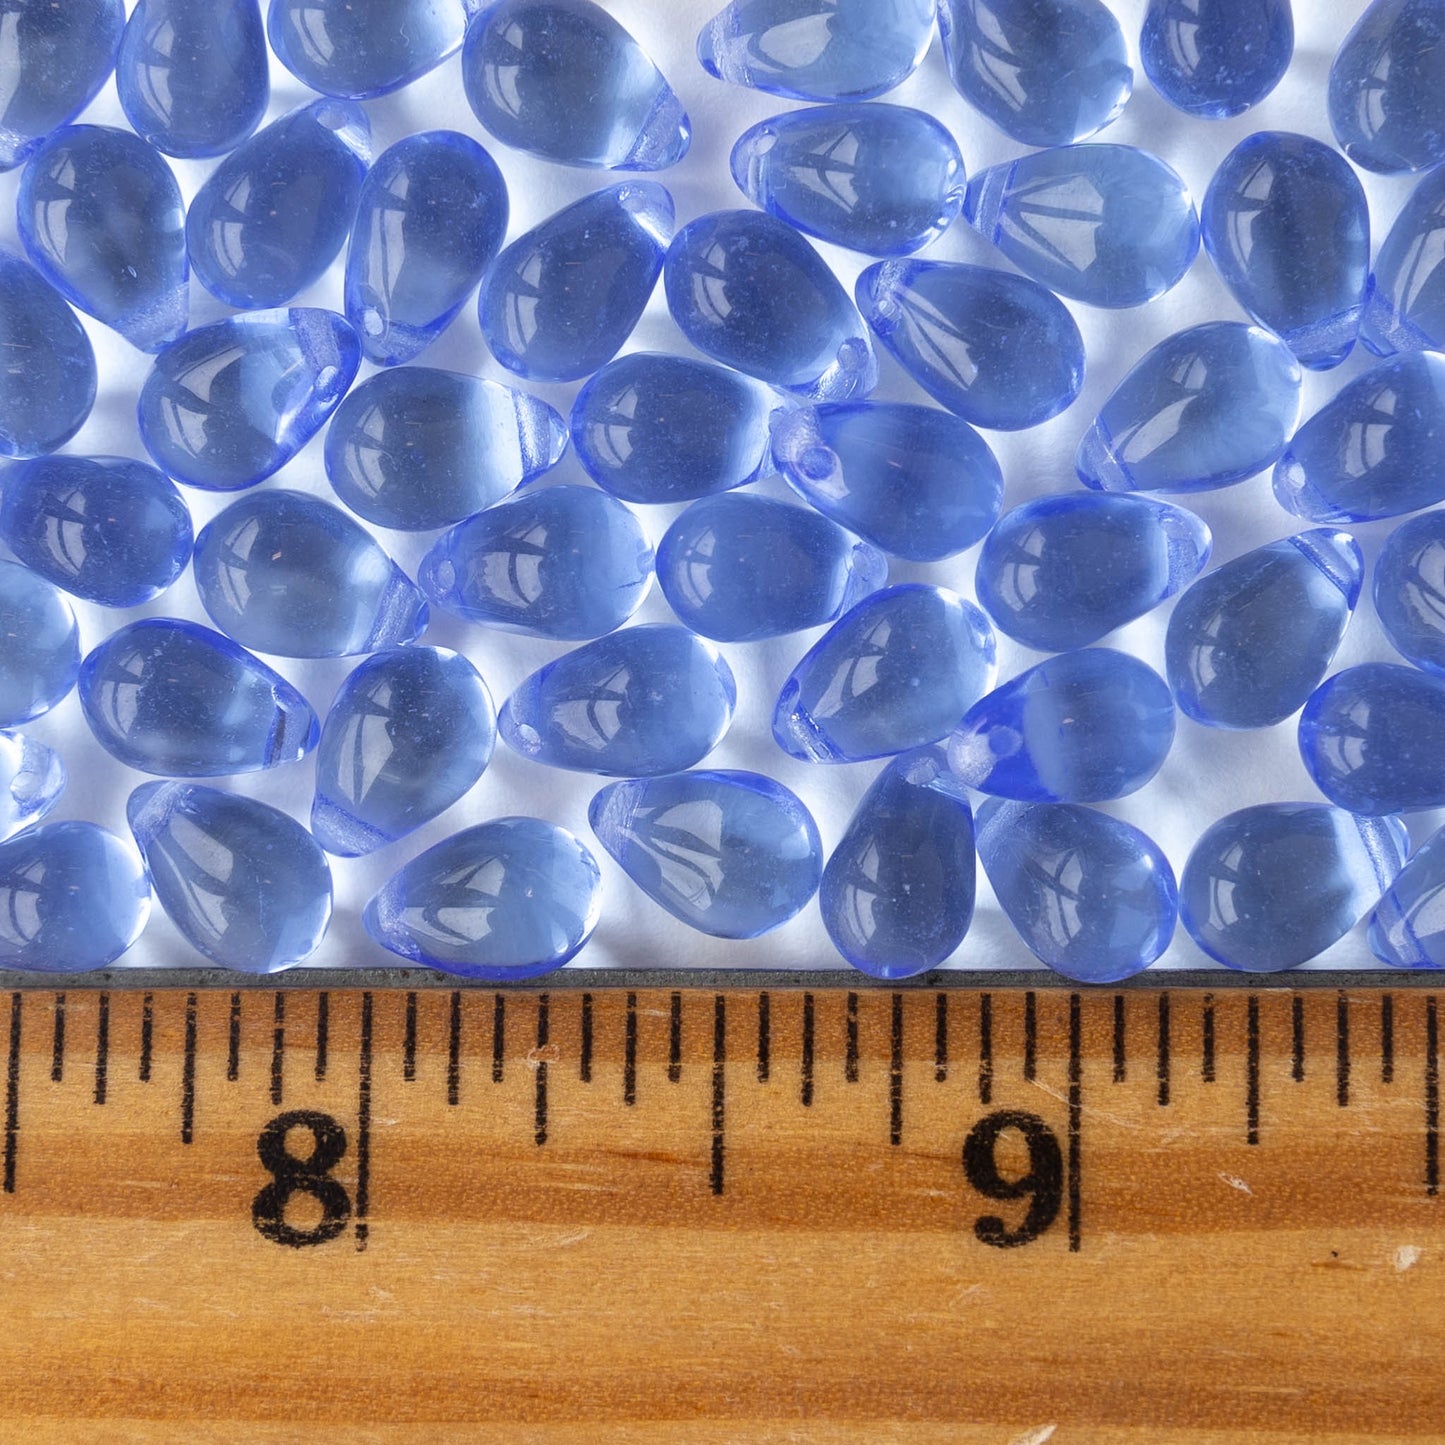 5x7mm Glass Teardrop Beads - Lt,. Sapphire Blue- 75 Beads